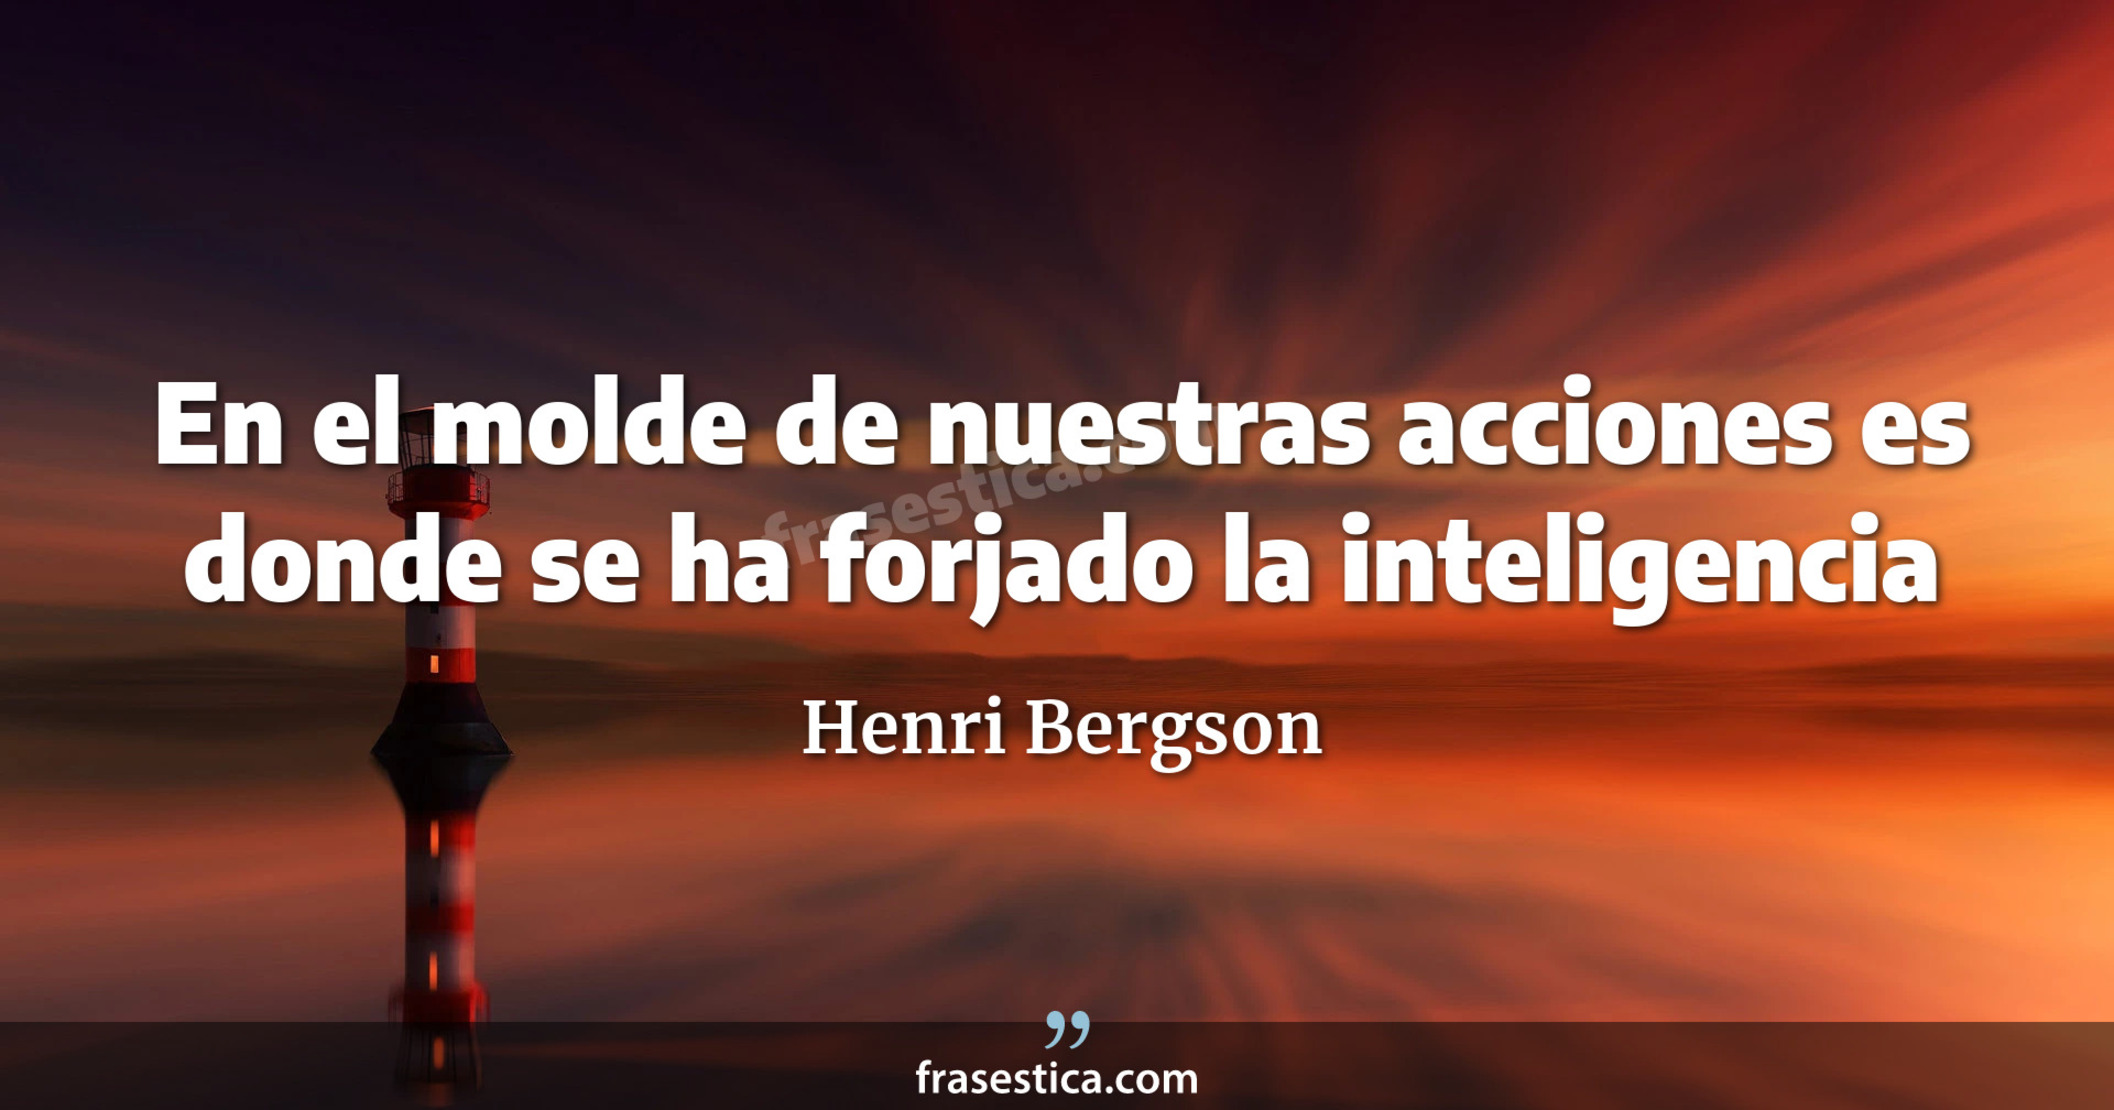 En el molde de nuestras acciones es donde se ha forjado la inteligencia - Henri Bergson